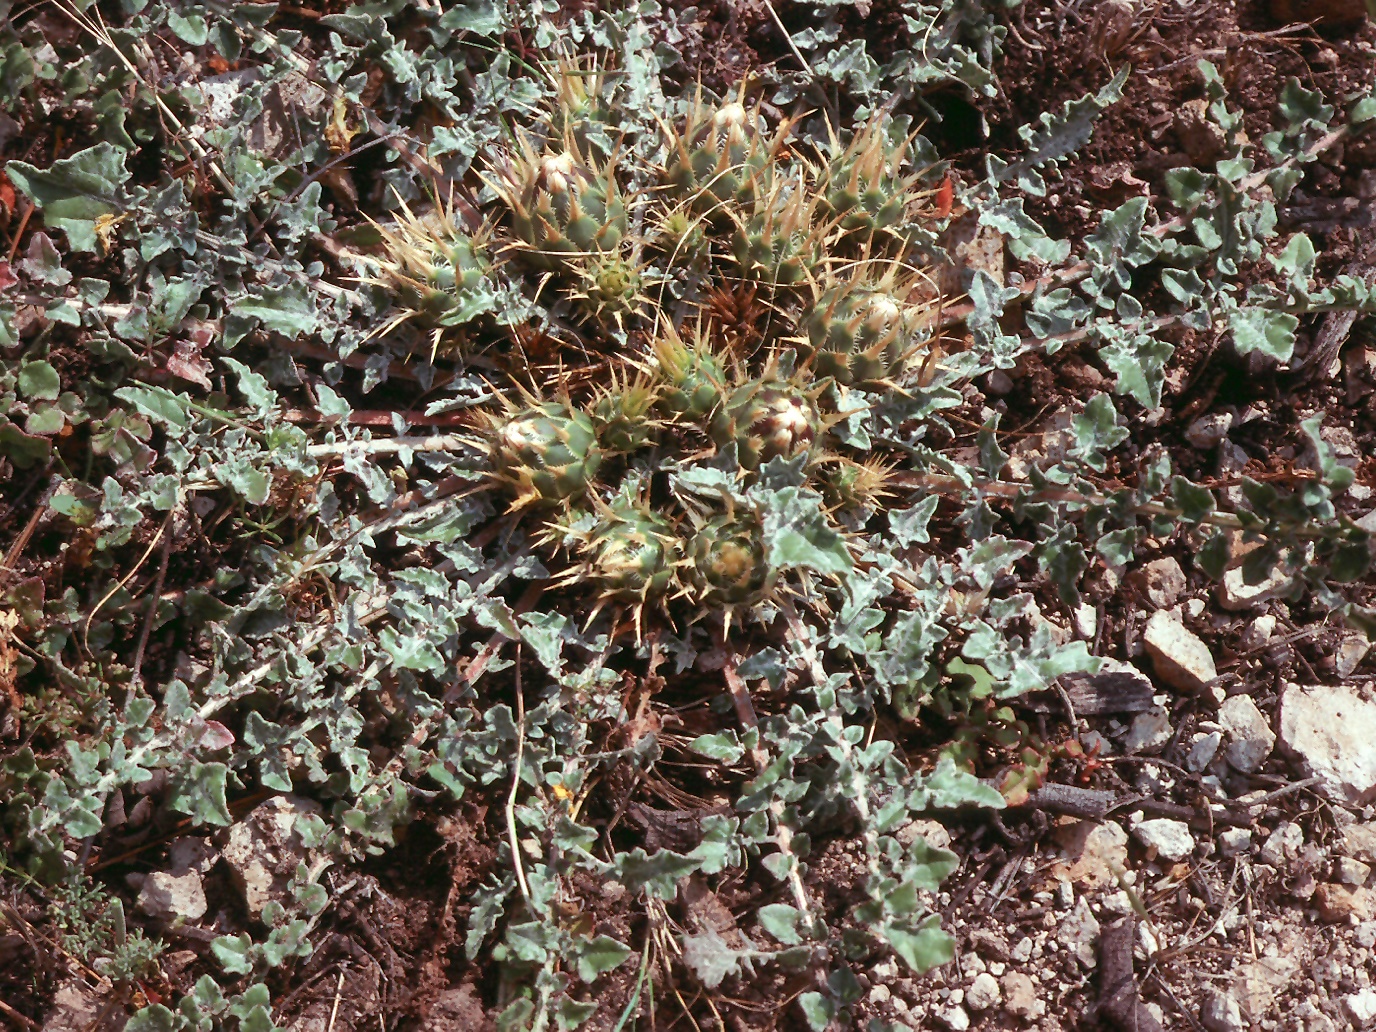 Centaurea sp.5